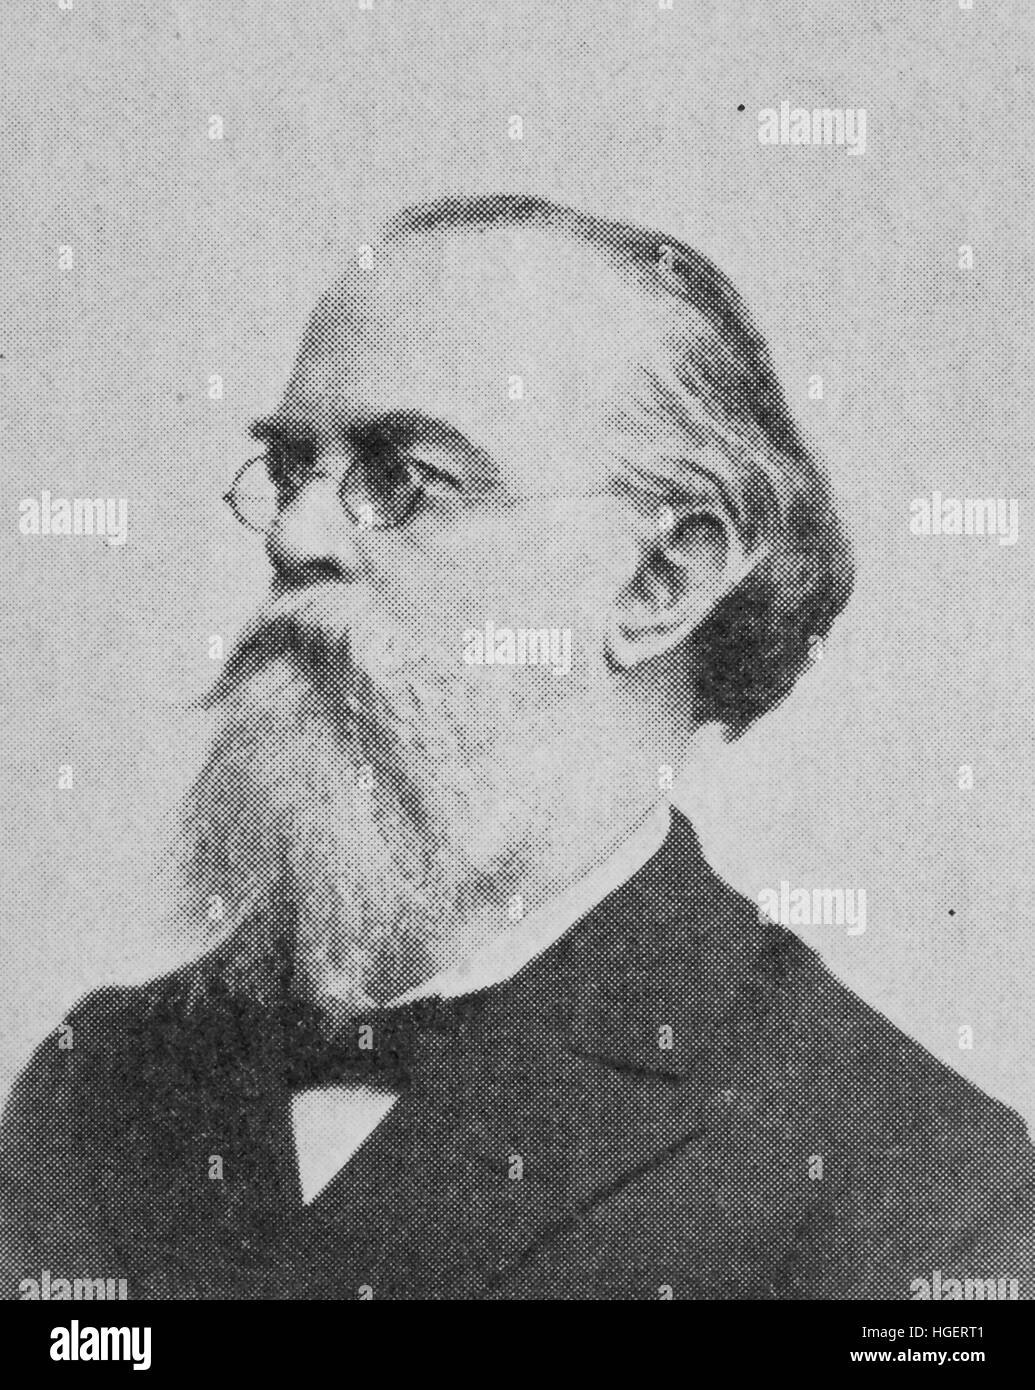 Anton Gustav Zeuner, 30 novembre 1828 - 17 octobre 1907, est un physicien allemand, ingénieur et épistémologue, considéré comme le fondateur de la thermodynamique technique et de l'École de Dresde de la Thermodynamique, reproduction d'une photo de l'année 1895, l'amélioration numérique Banque D'Images